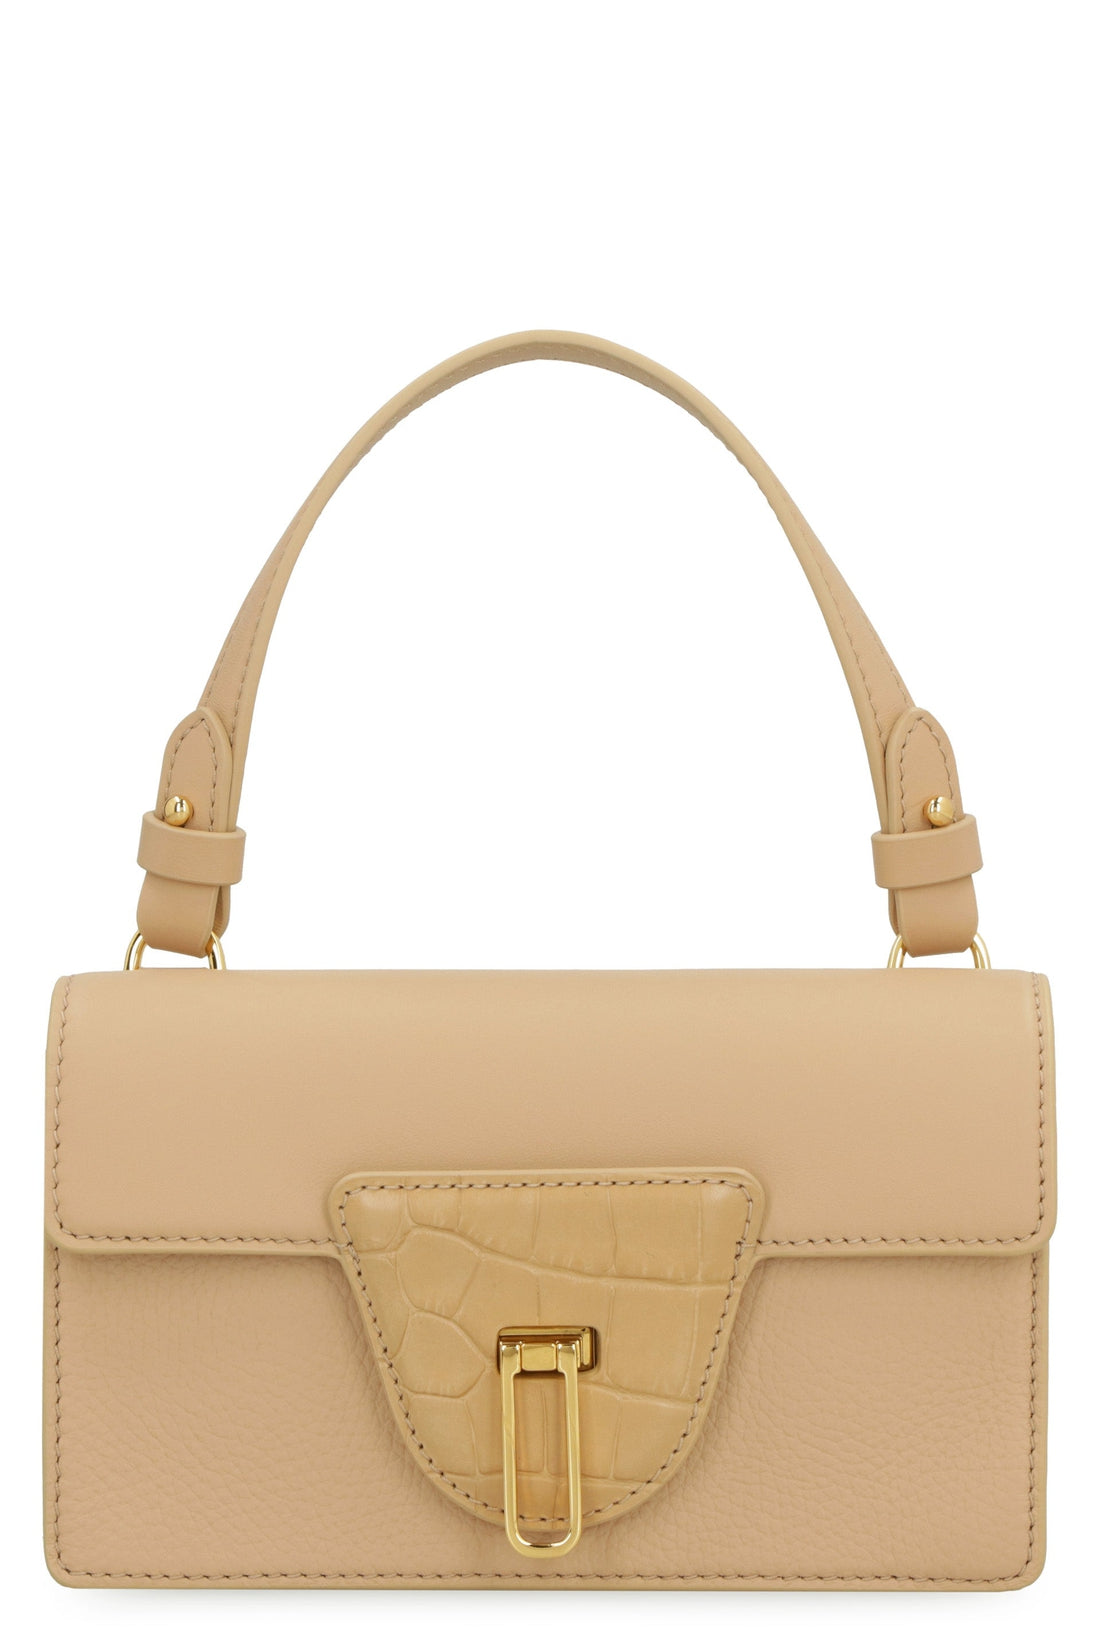 Coccinelle-OUTLET-SALE-Nico leather handbag-ARCHIVIST